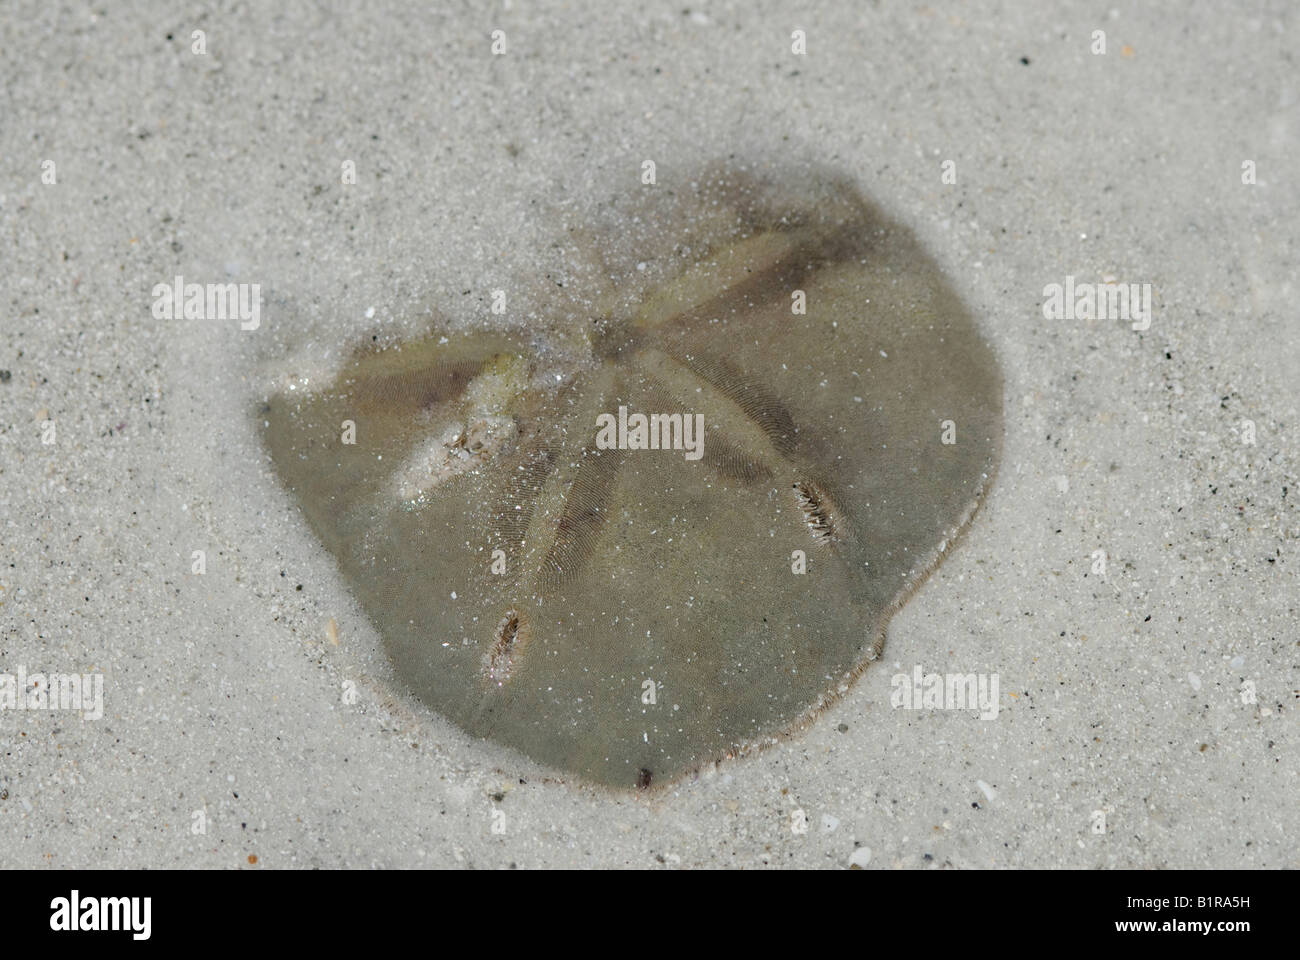 Un live cinq trous de serrure urchin Mellita sp souvent appelé un "dollar" et dans le sable sous l'eau Banque D'Images